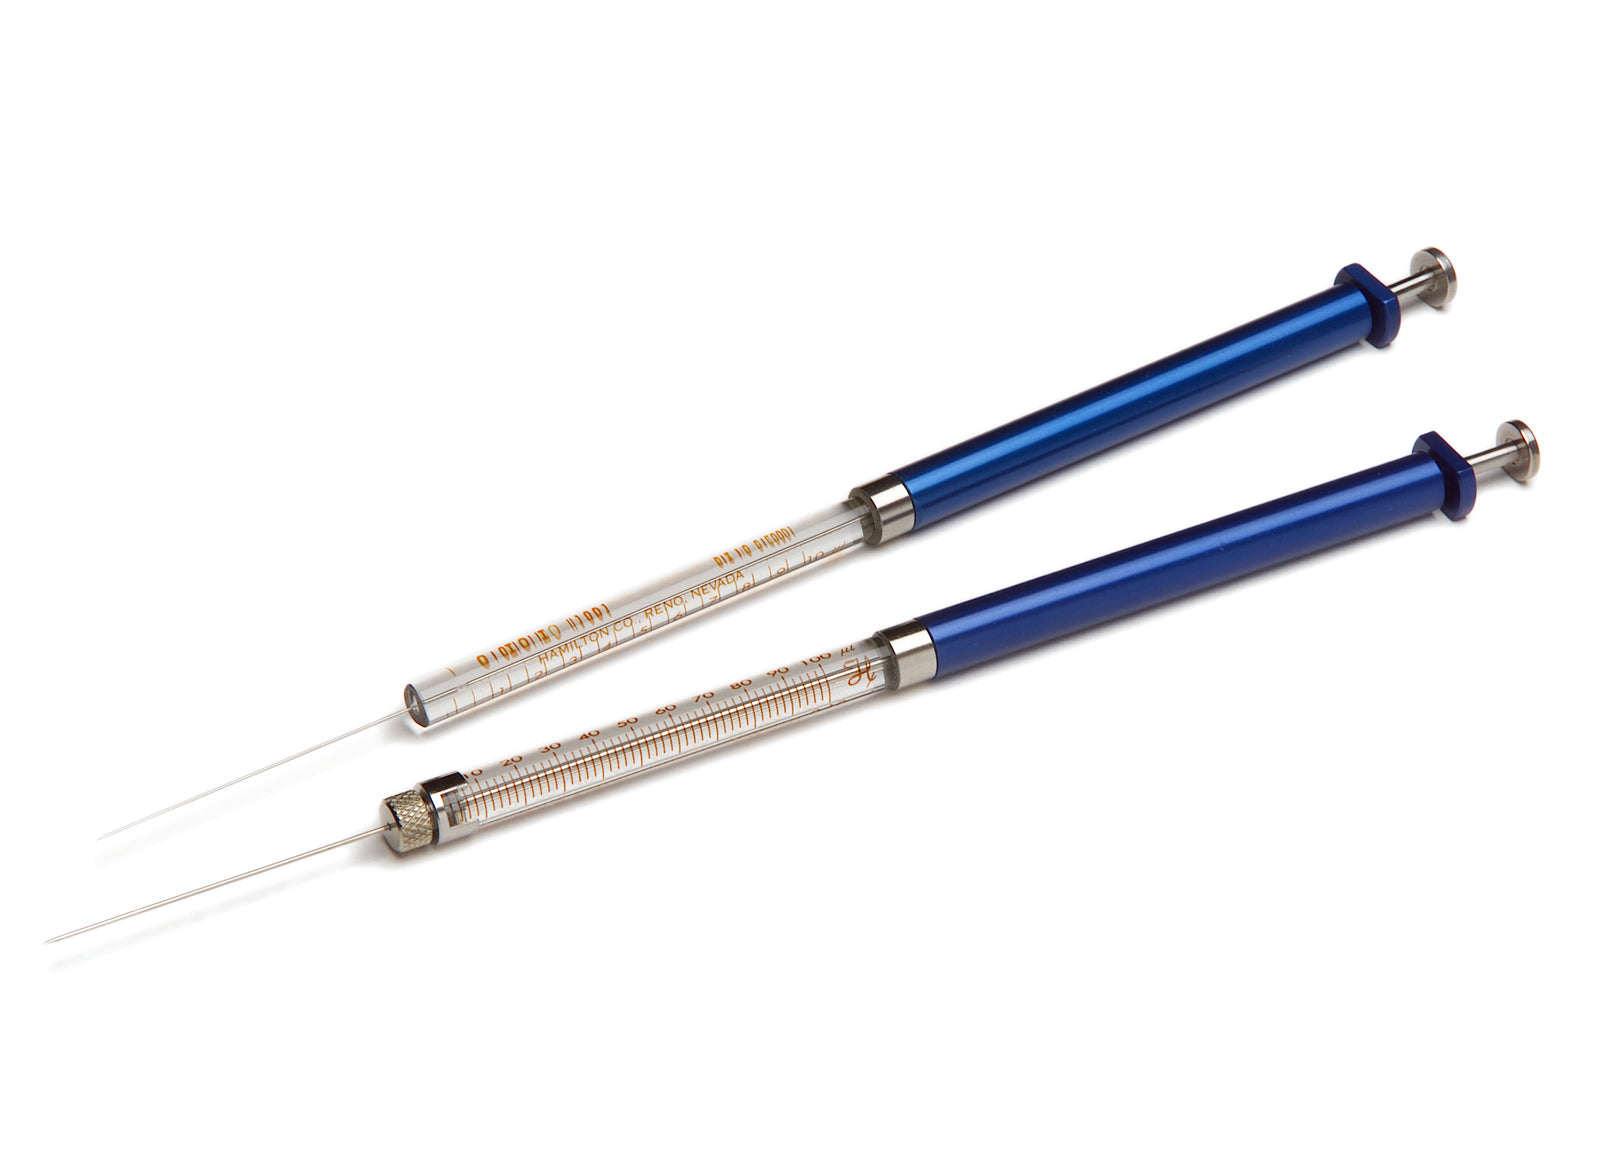 Hamilton Company 1800 Series Gastight Syringes